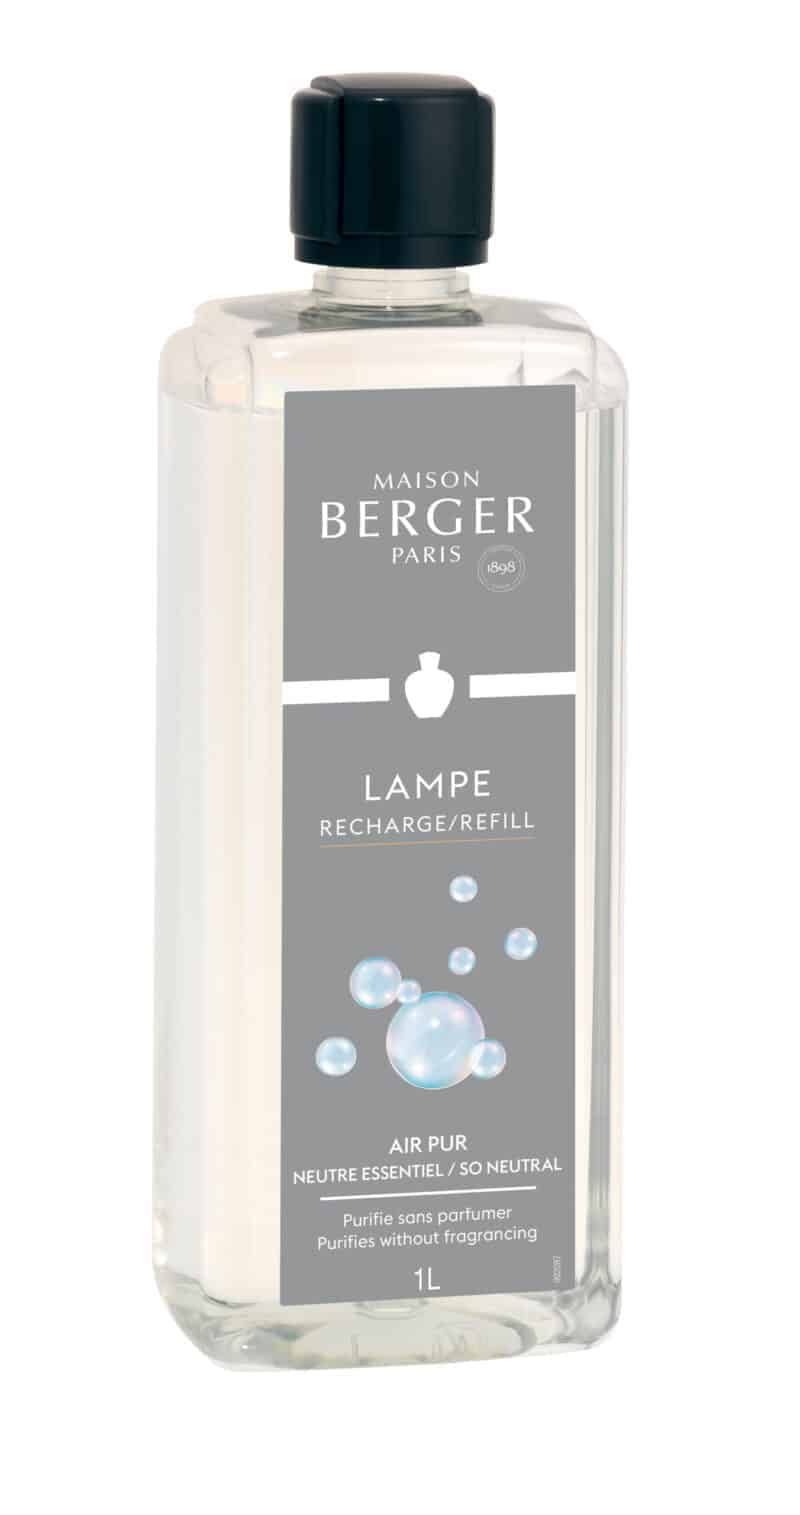 Maison Berger Paris - parfum So Neutral - 1000 ml.